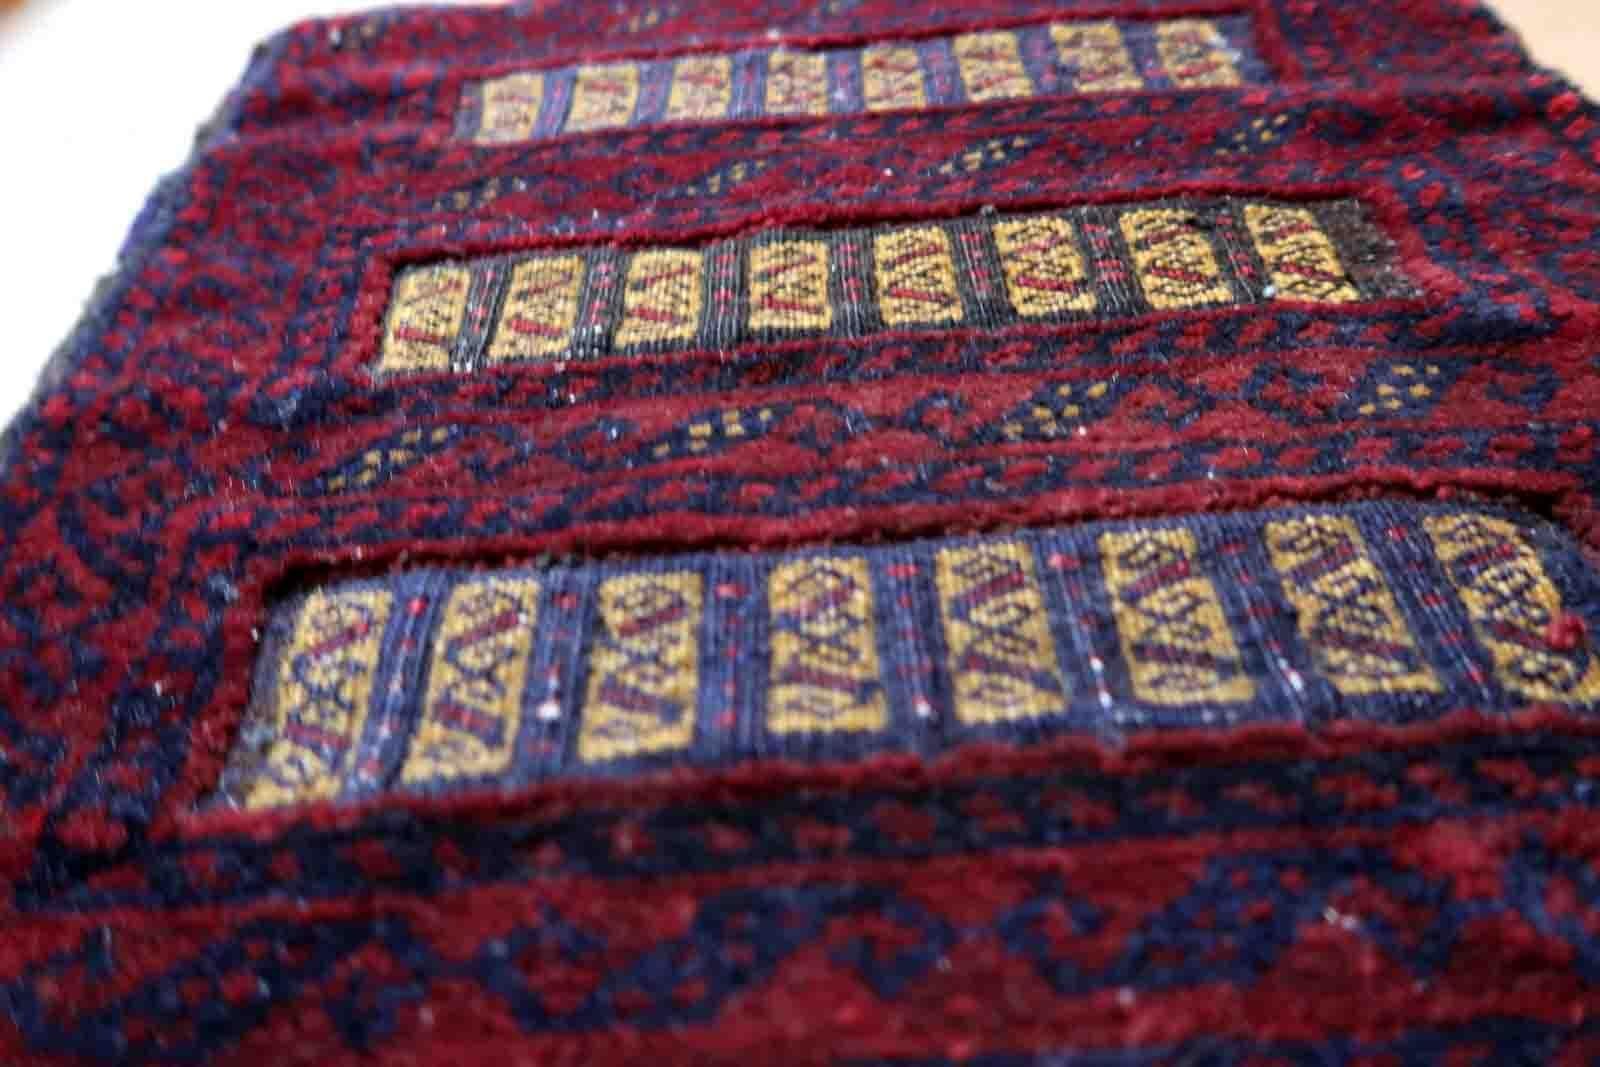 Handgefertigte afghanische Belutsch-Salztasche in tiefem Burgunderrot. Die Tasche stammt aus dem Ende des 20. Jahrhunderts und ist in gutem Originalzustand.

-Zustand: original gut,

-CIRCA: 1970er Jahre,

-Größe: 1,1' x 1,6' (35cm x